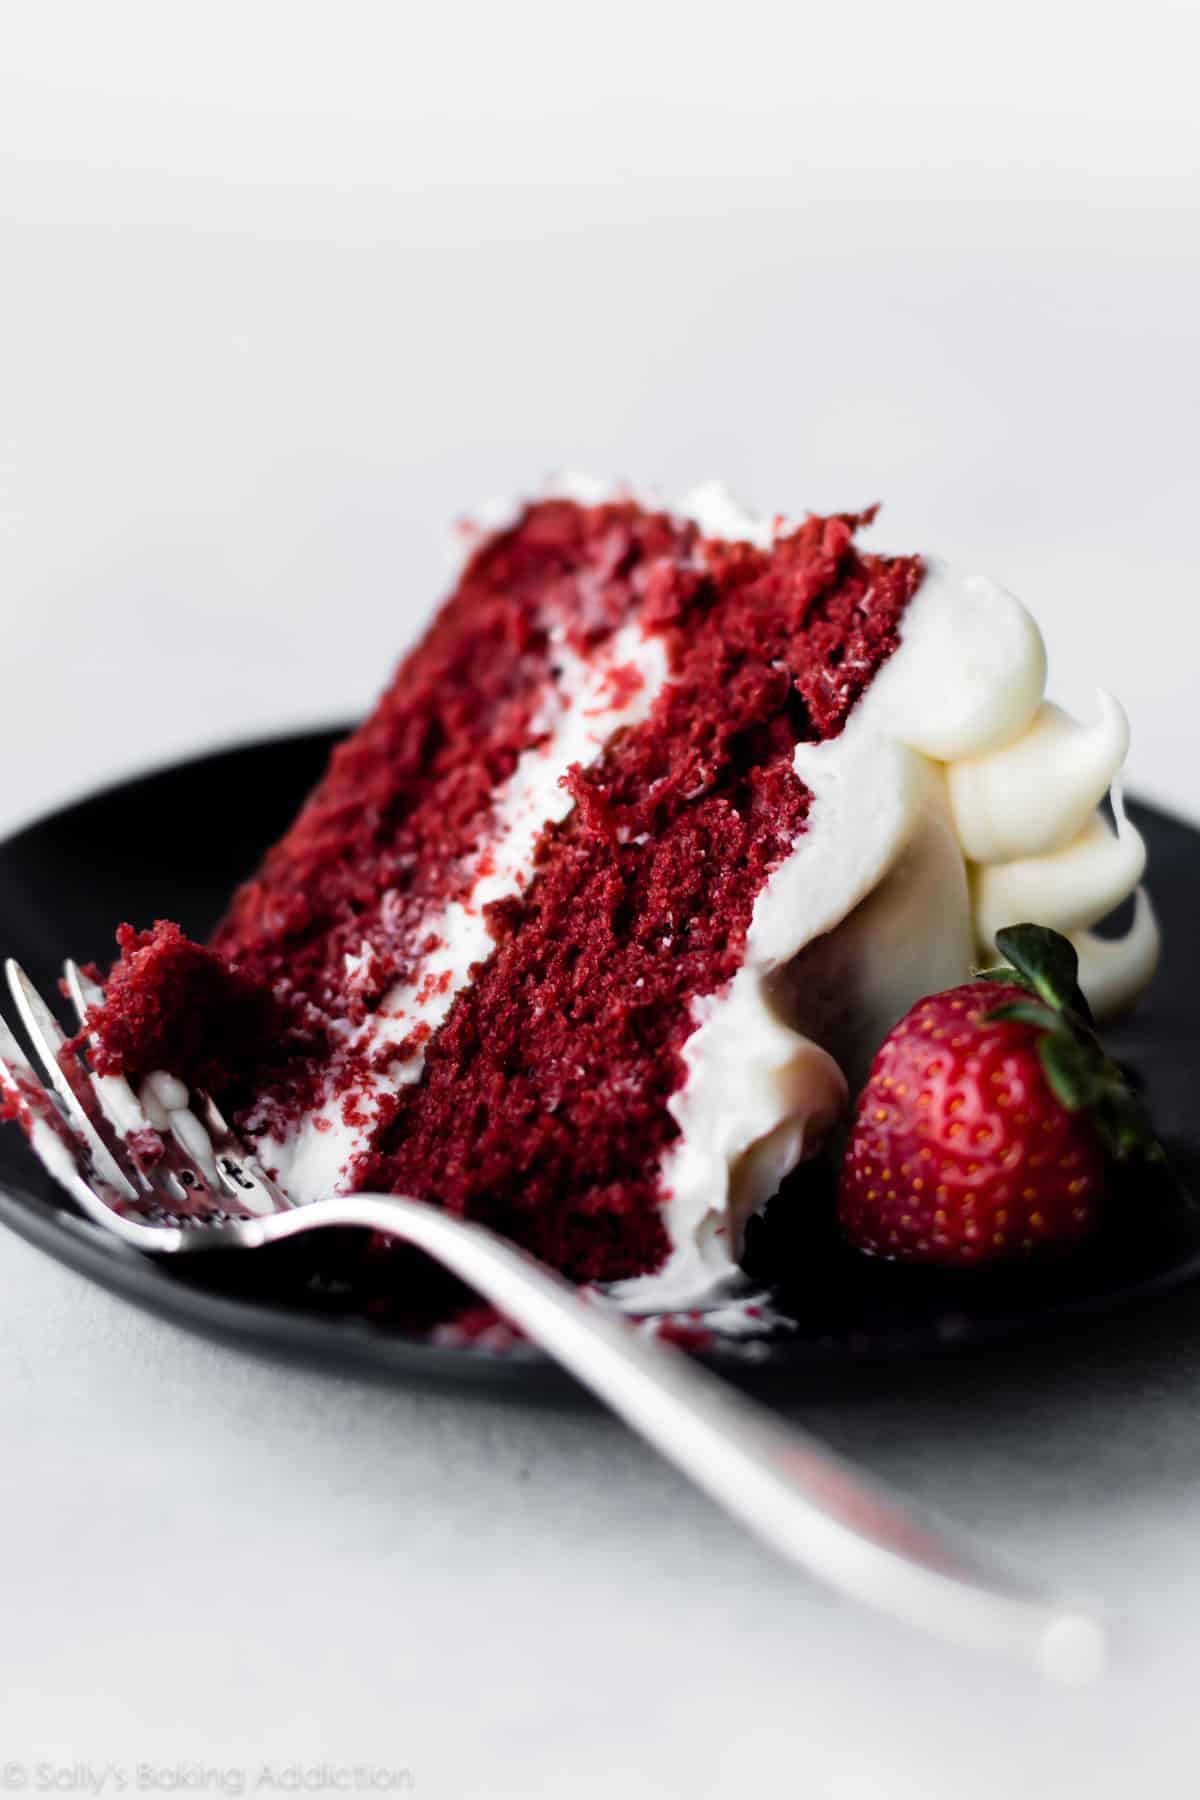 slice of red velvet cake on a black plate